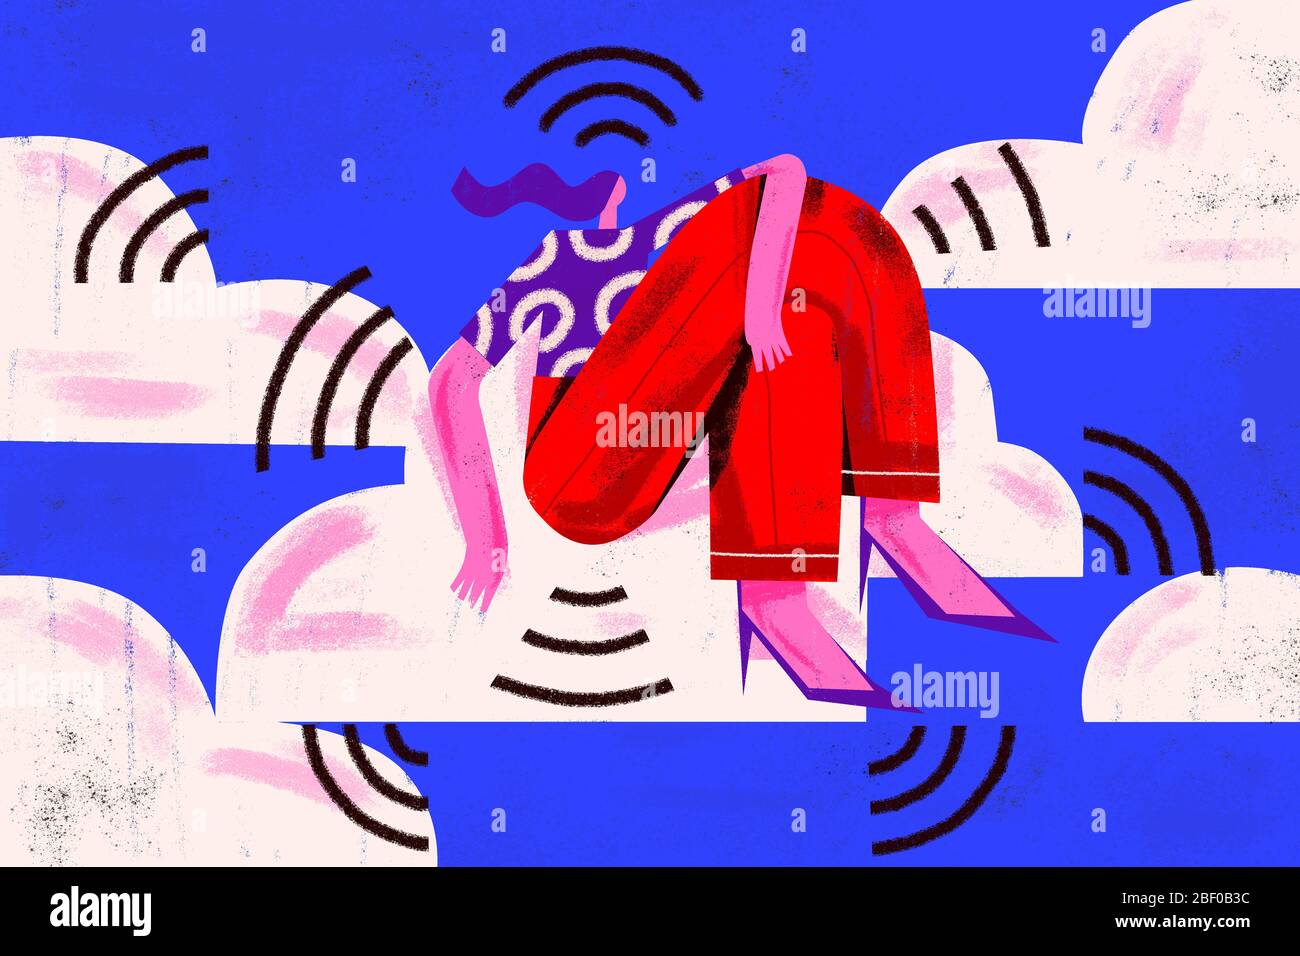 Restez connecté. Illustration des médias sociaux et des technologies de télécommunication. Jeune femme assise dans des nuages entourés de symboles de signal Wi-Fi. Banque D'Images